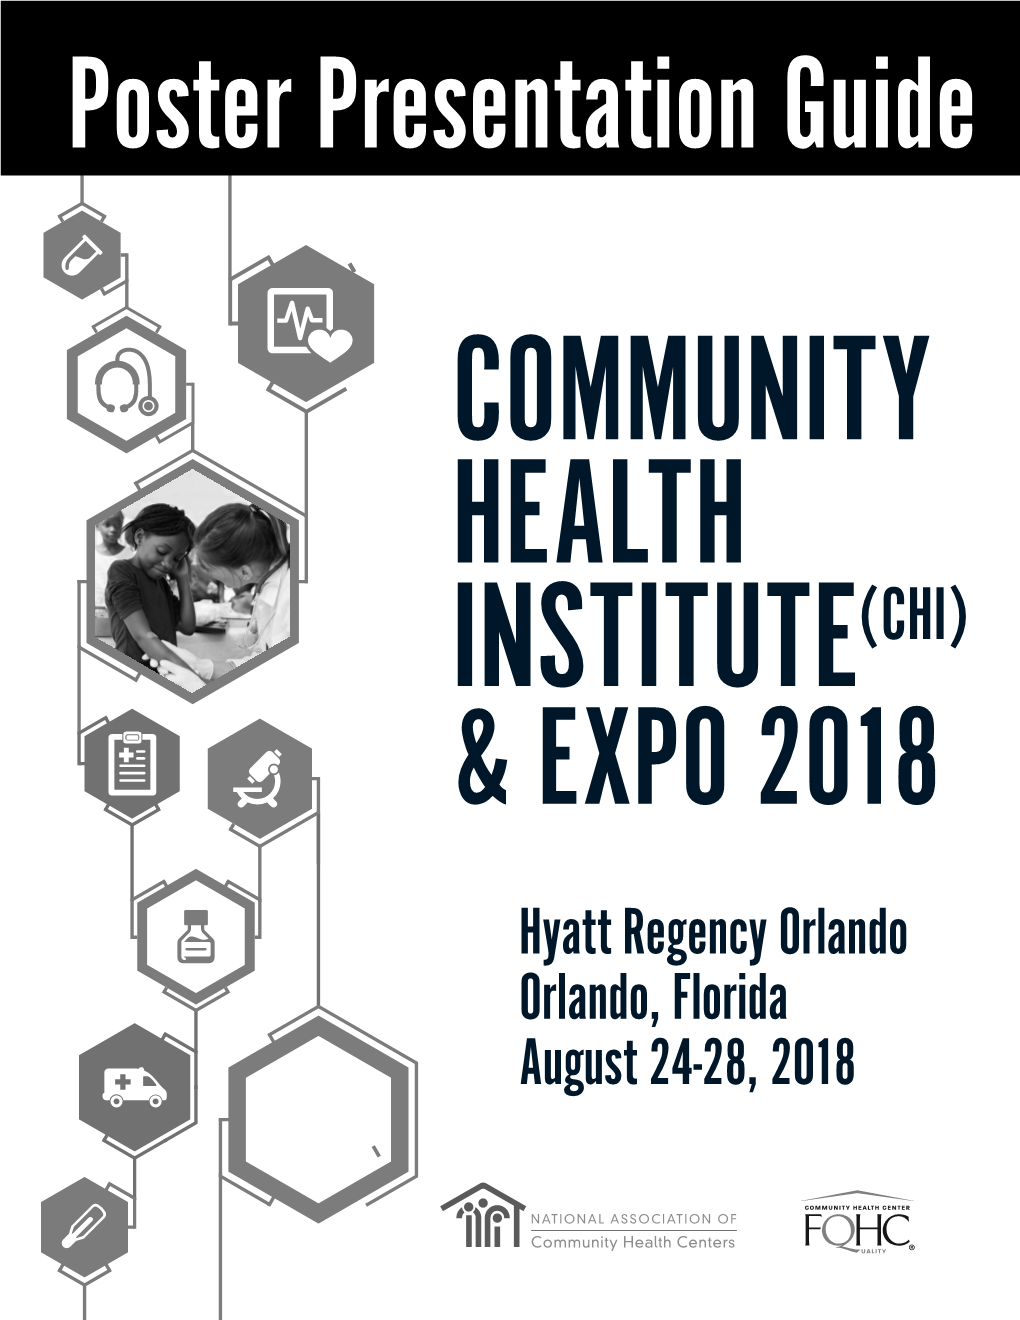 Hyatt Regency Orlando Orlando, Florida August 24-28, 2018